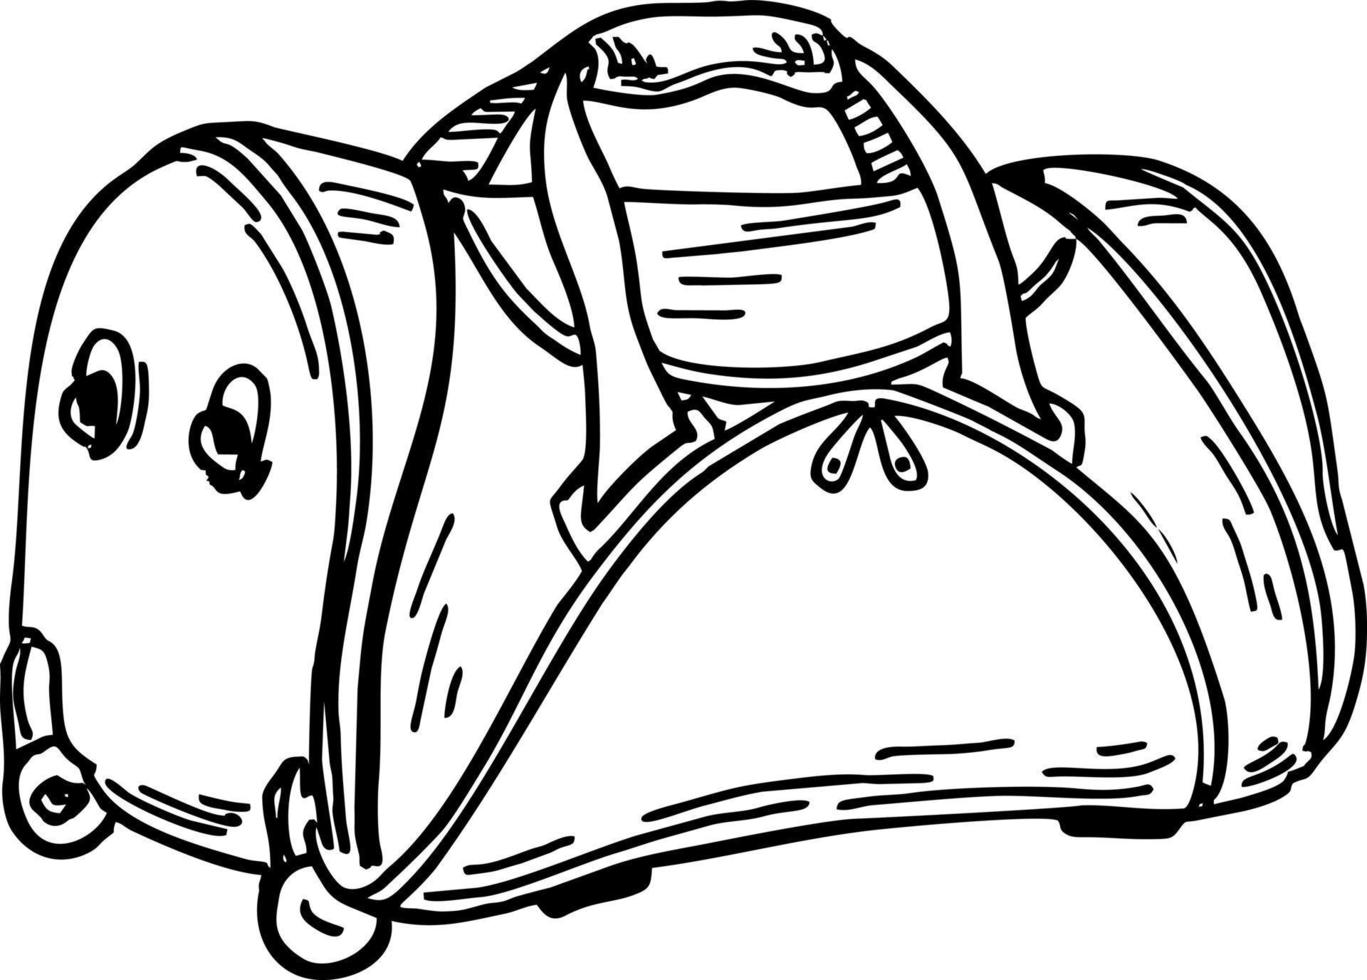 bolsa de viagem de esboço. bolsa de mão bolsa de mão contorno à mão livre tinta preta emblema de logotipo desenhado à mão esboçado em doodle retrô vetor